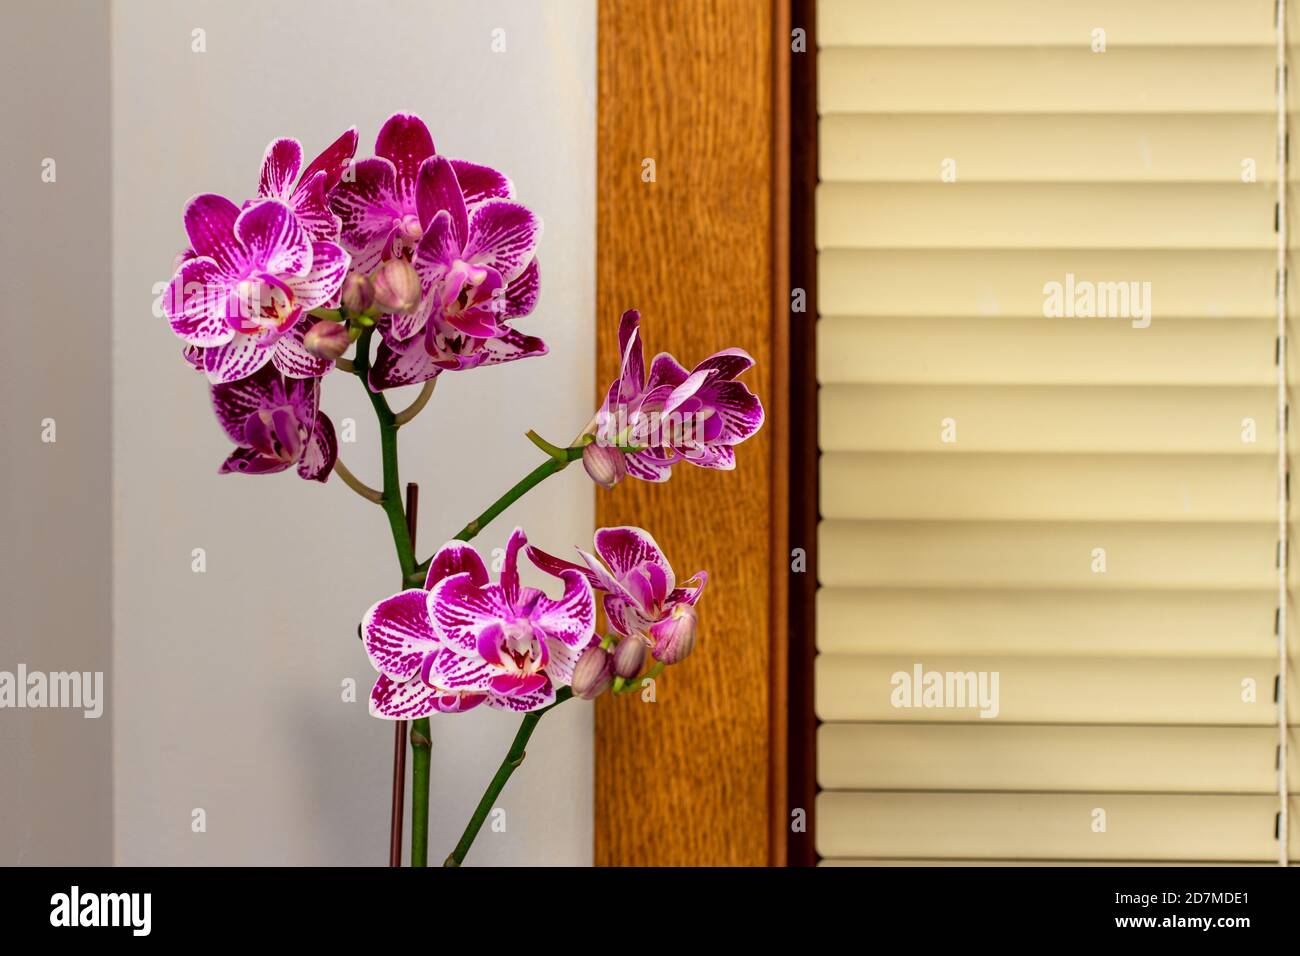 Gros plan sur la texture de la magnifique violet et blanc élégant fleurs sur une plante d'orchidée de phalaenopsis (orchidée de papillon) sur fond blanc Banque D'Images